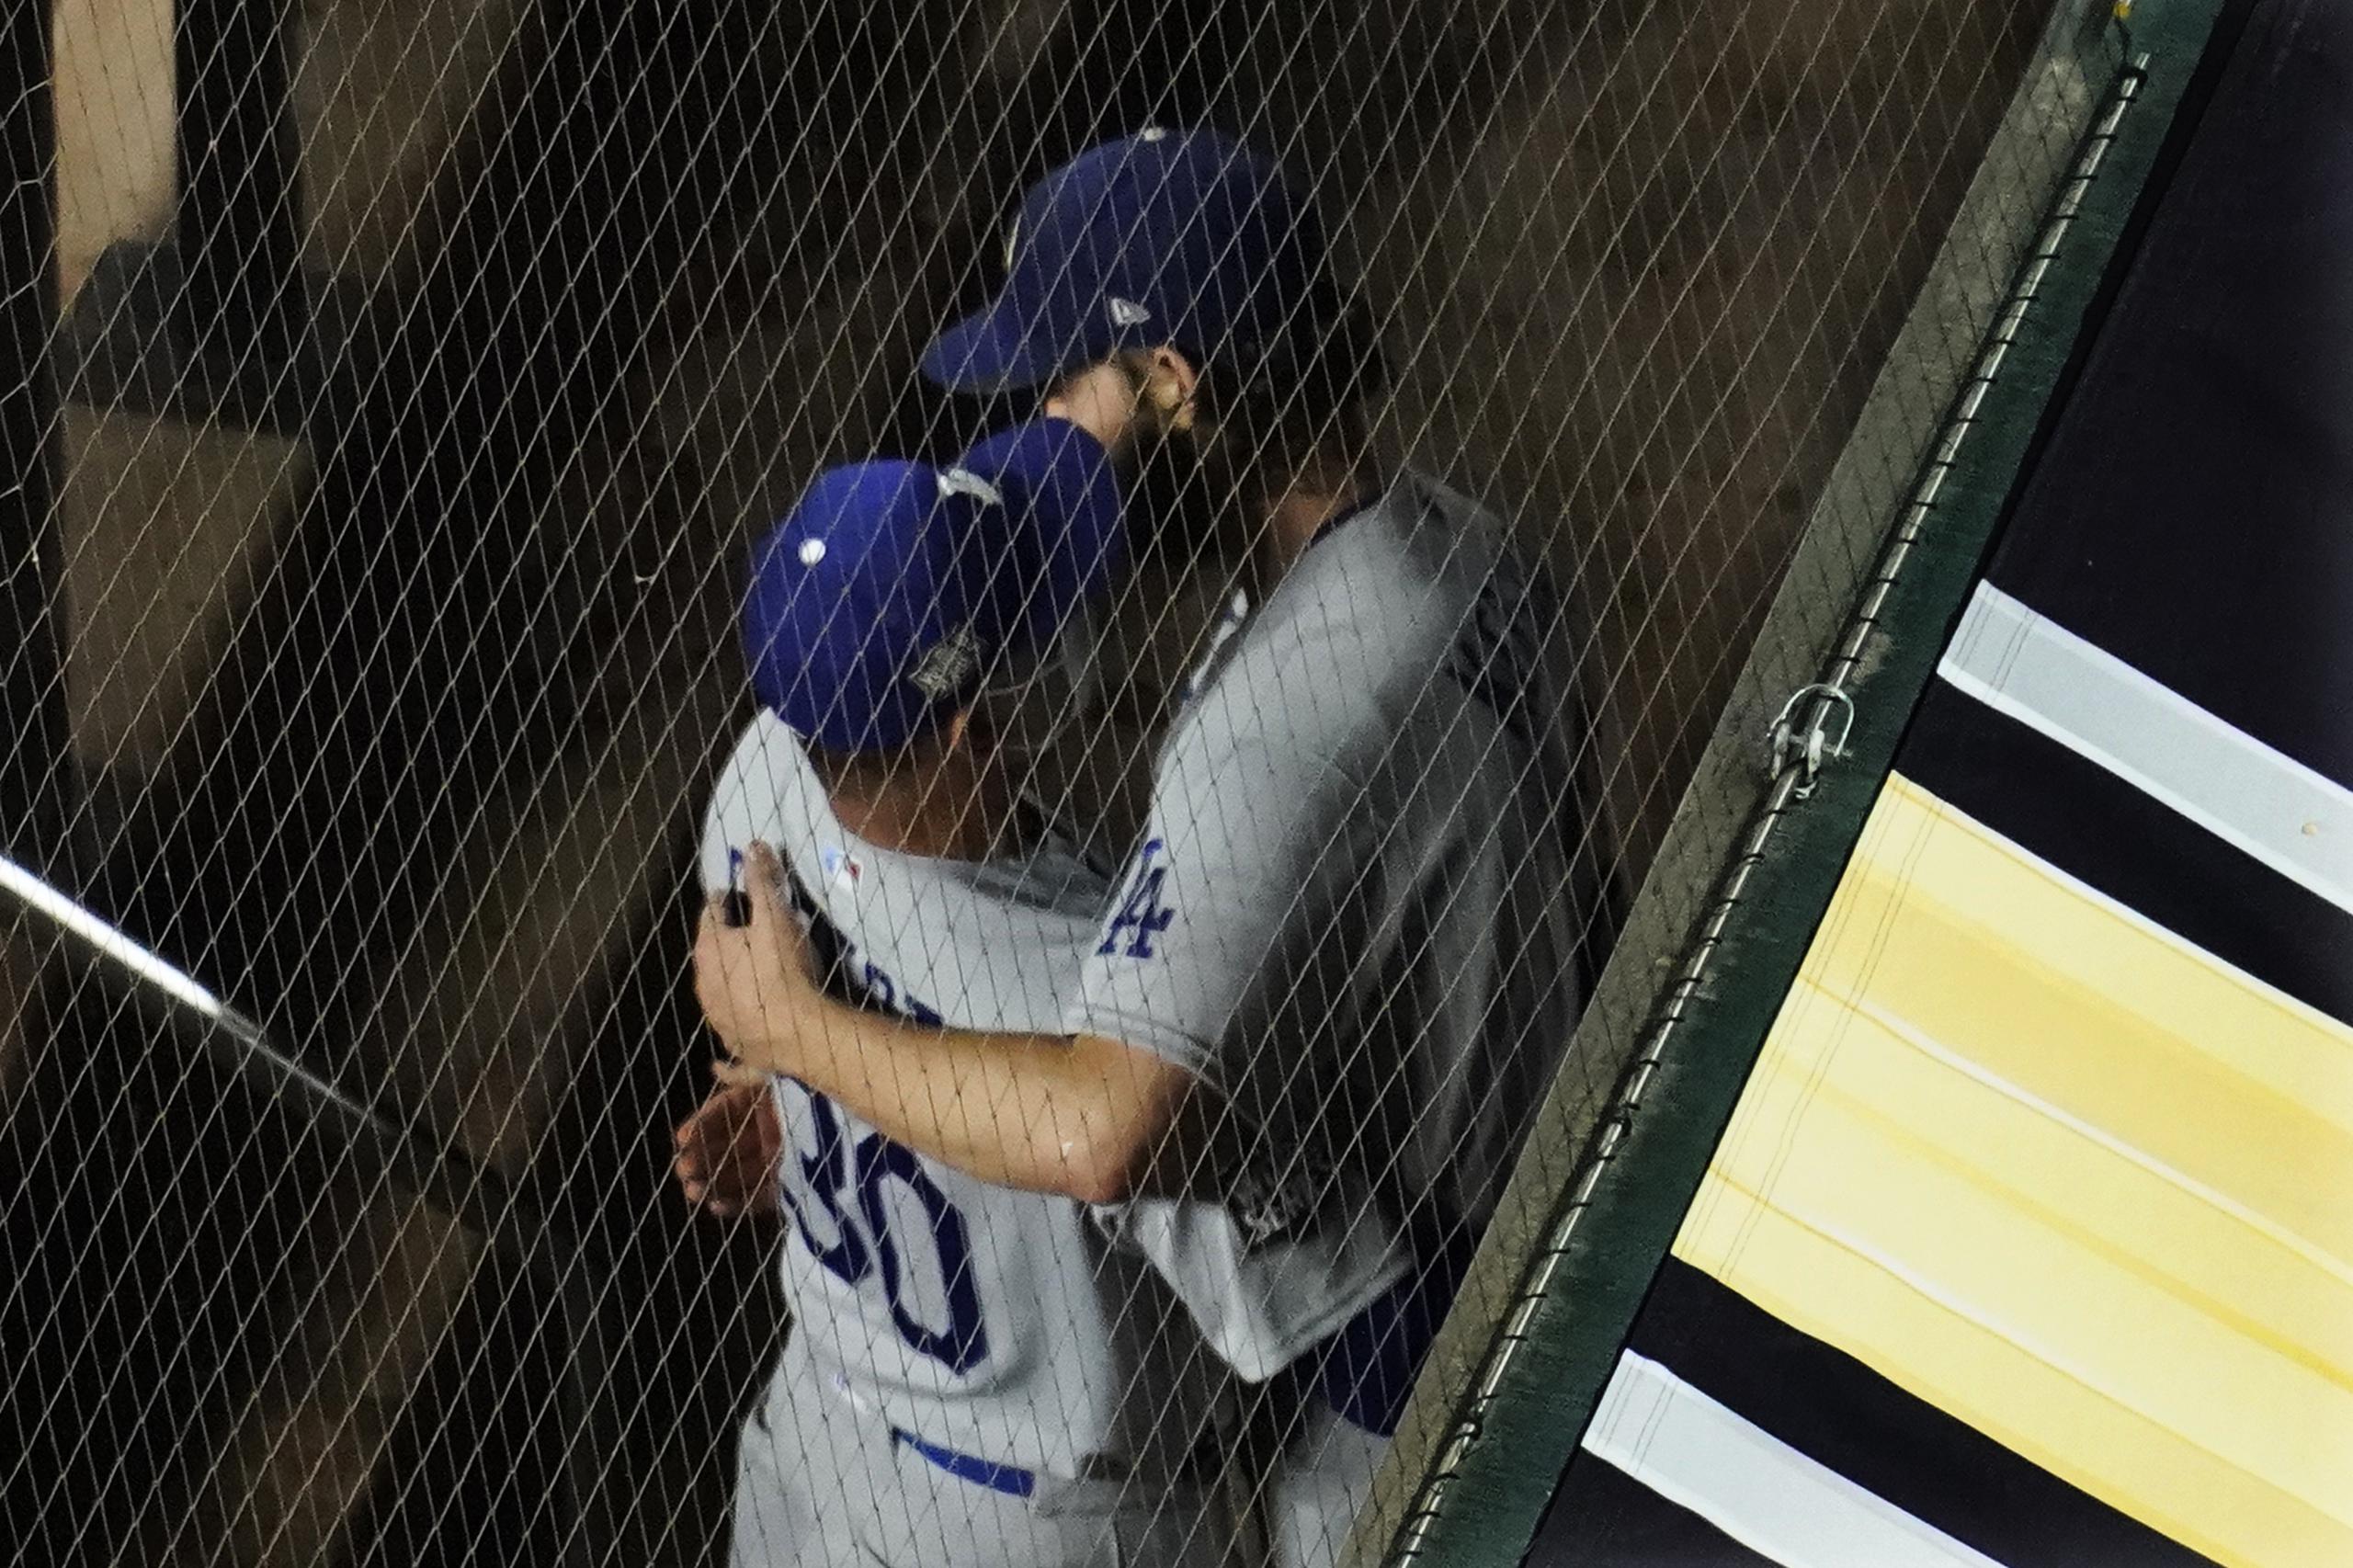 El dirigente de los Dodgers, Dave Roberts, abraza al lanzador Clayton Kershaw luego de removerlo en la sexta del partido del domingo luego de retirar a dos bateadores. Según dijeron ambos, la decisión fue una planificada y discutida por ambos.